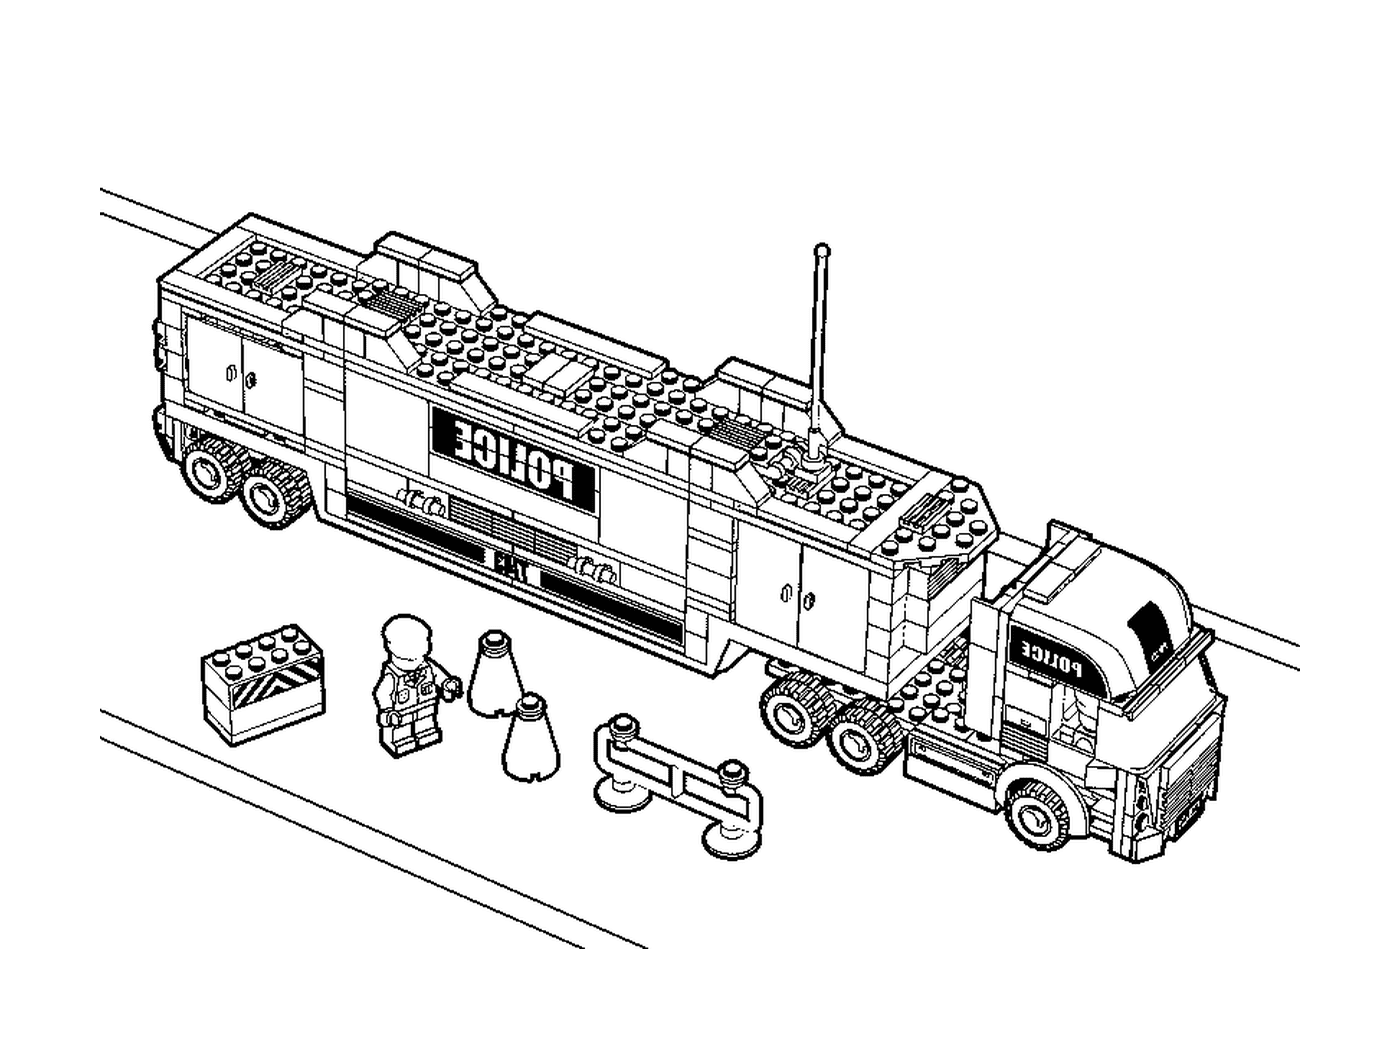  Полицейский грузовик Лего в этом образе 